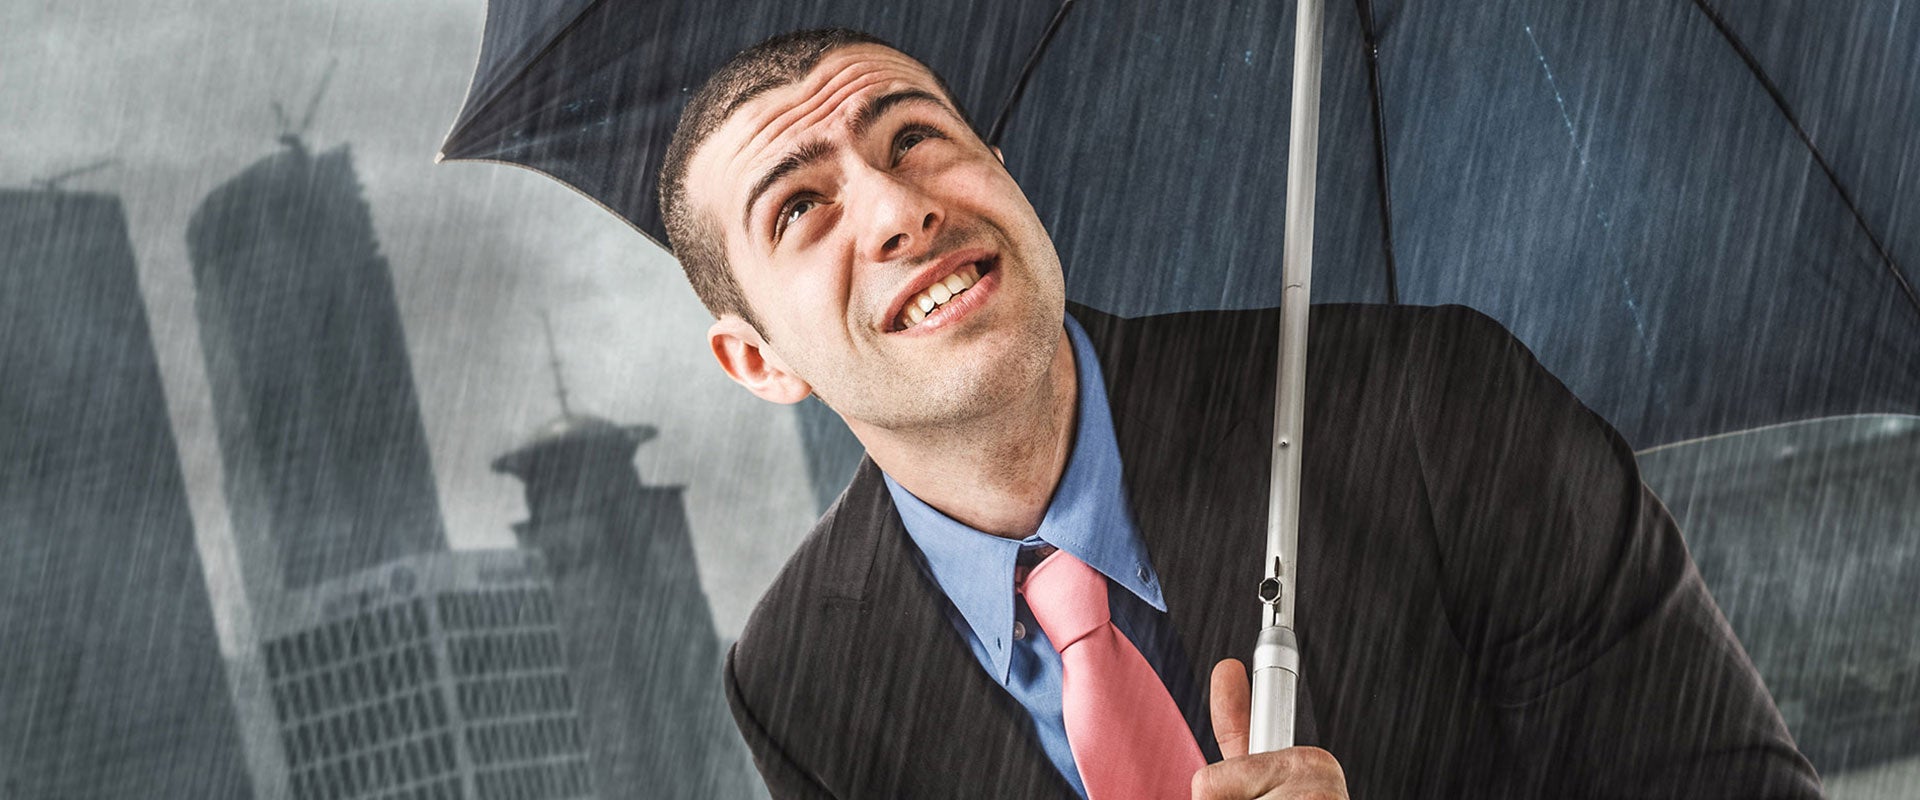 man with umbrella in rain